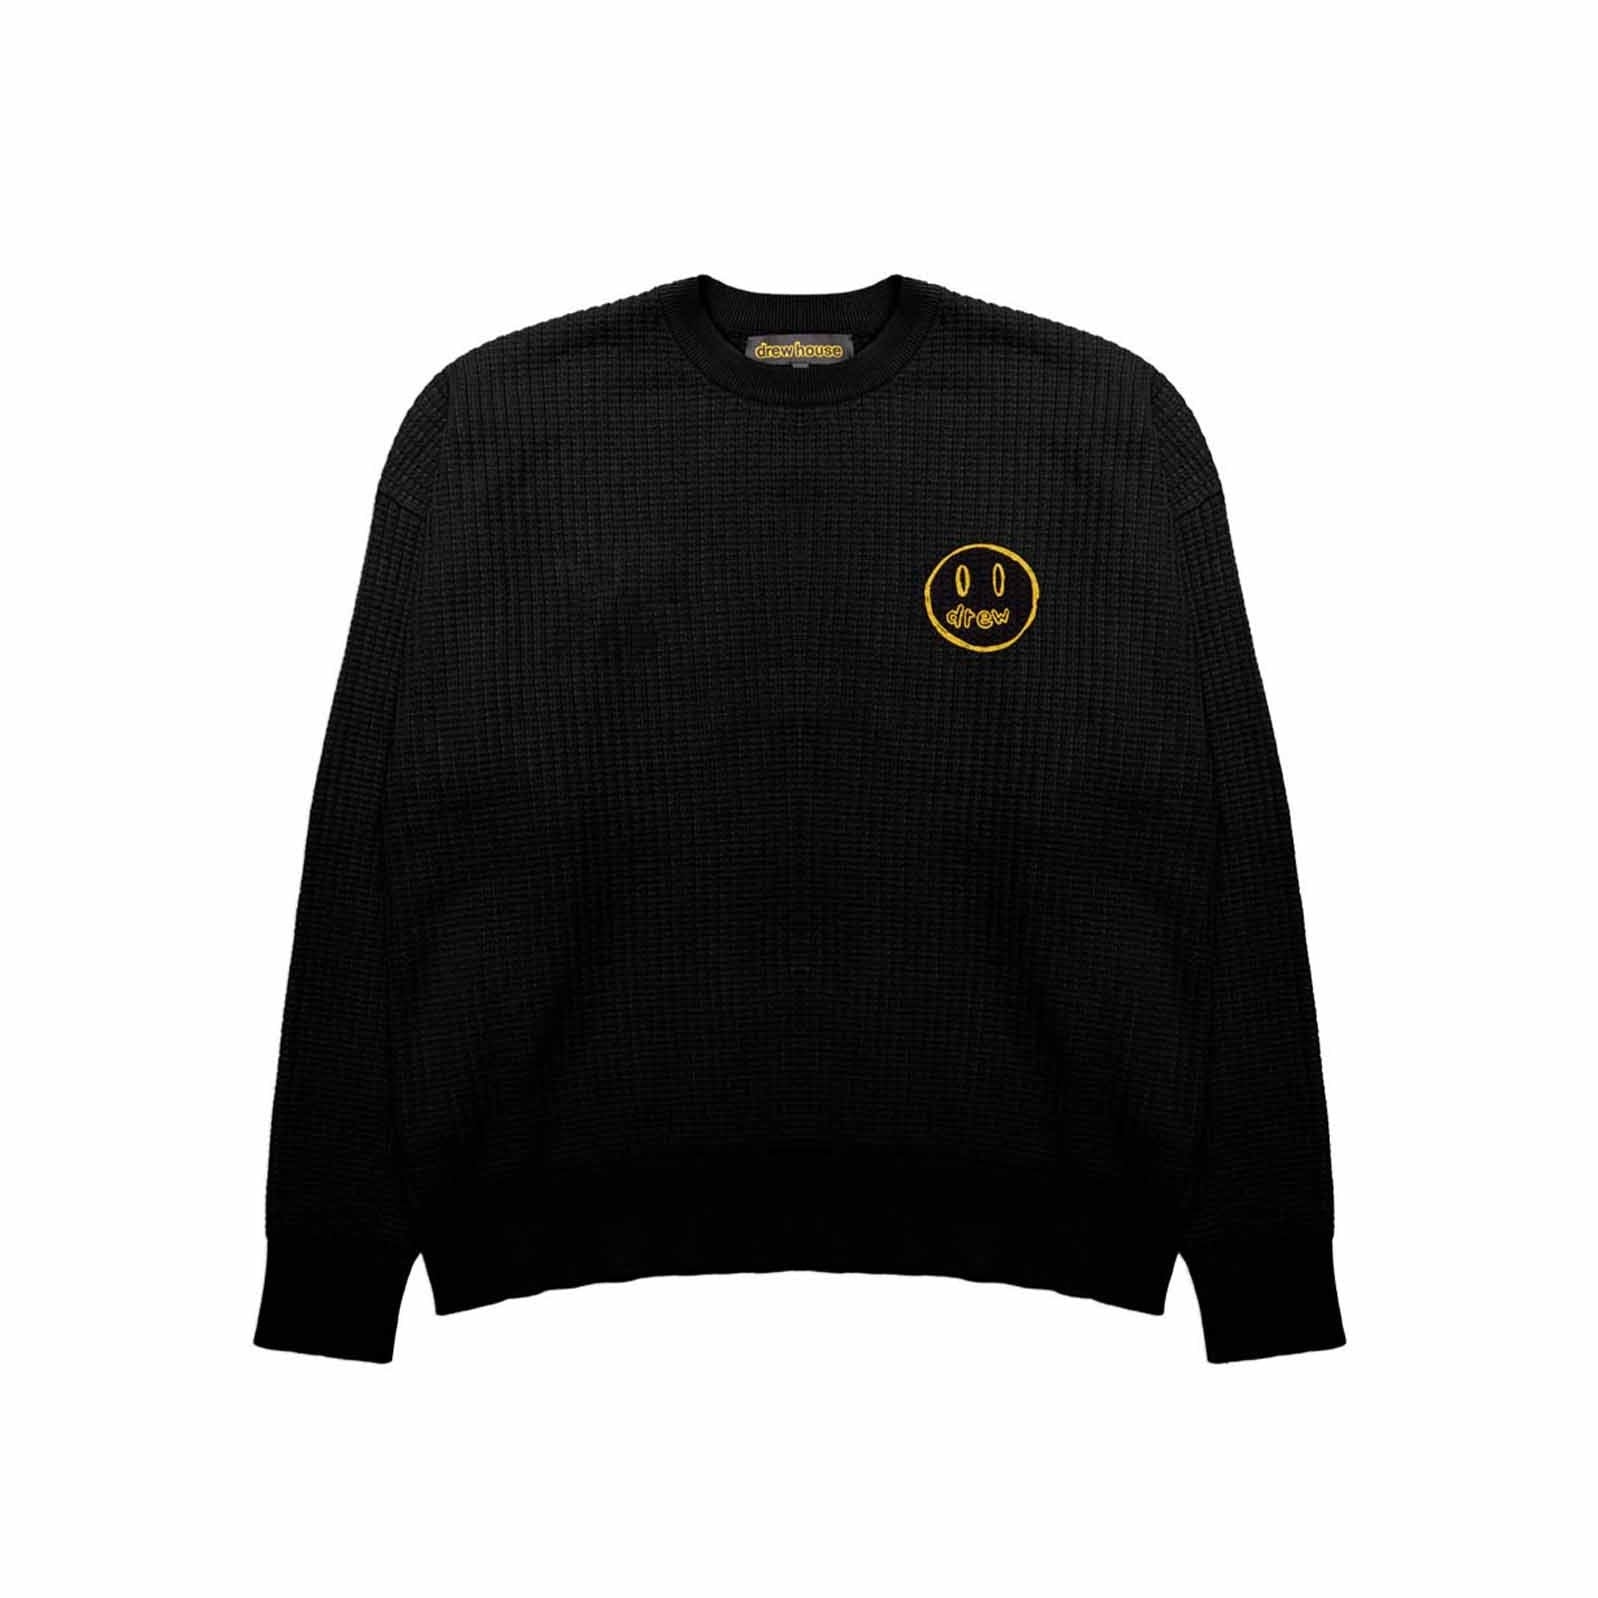 Drew House Mascot Waffle Sweater - Black | In stock – WEAR43WAY